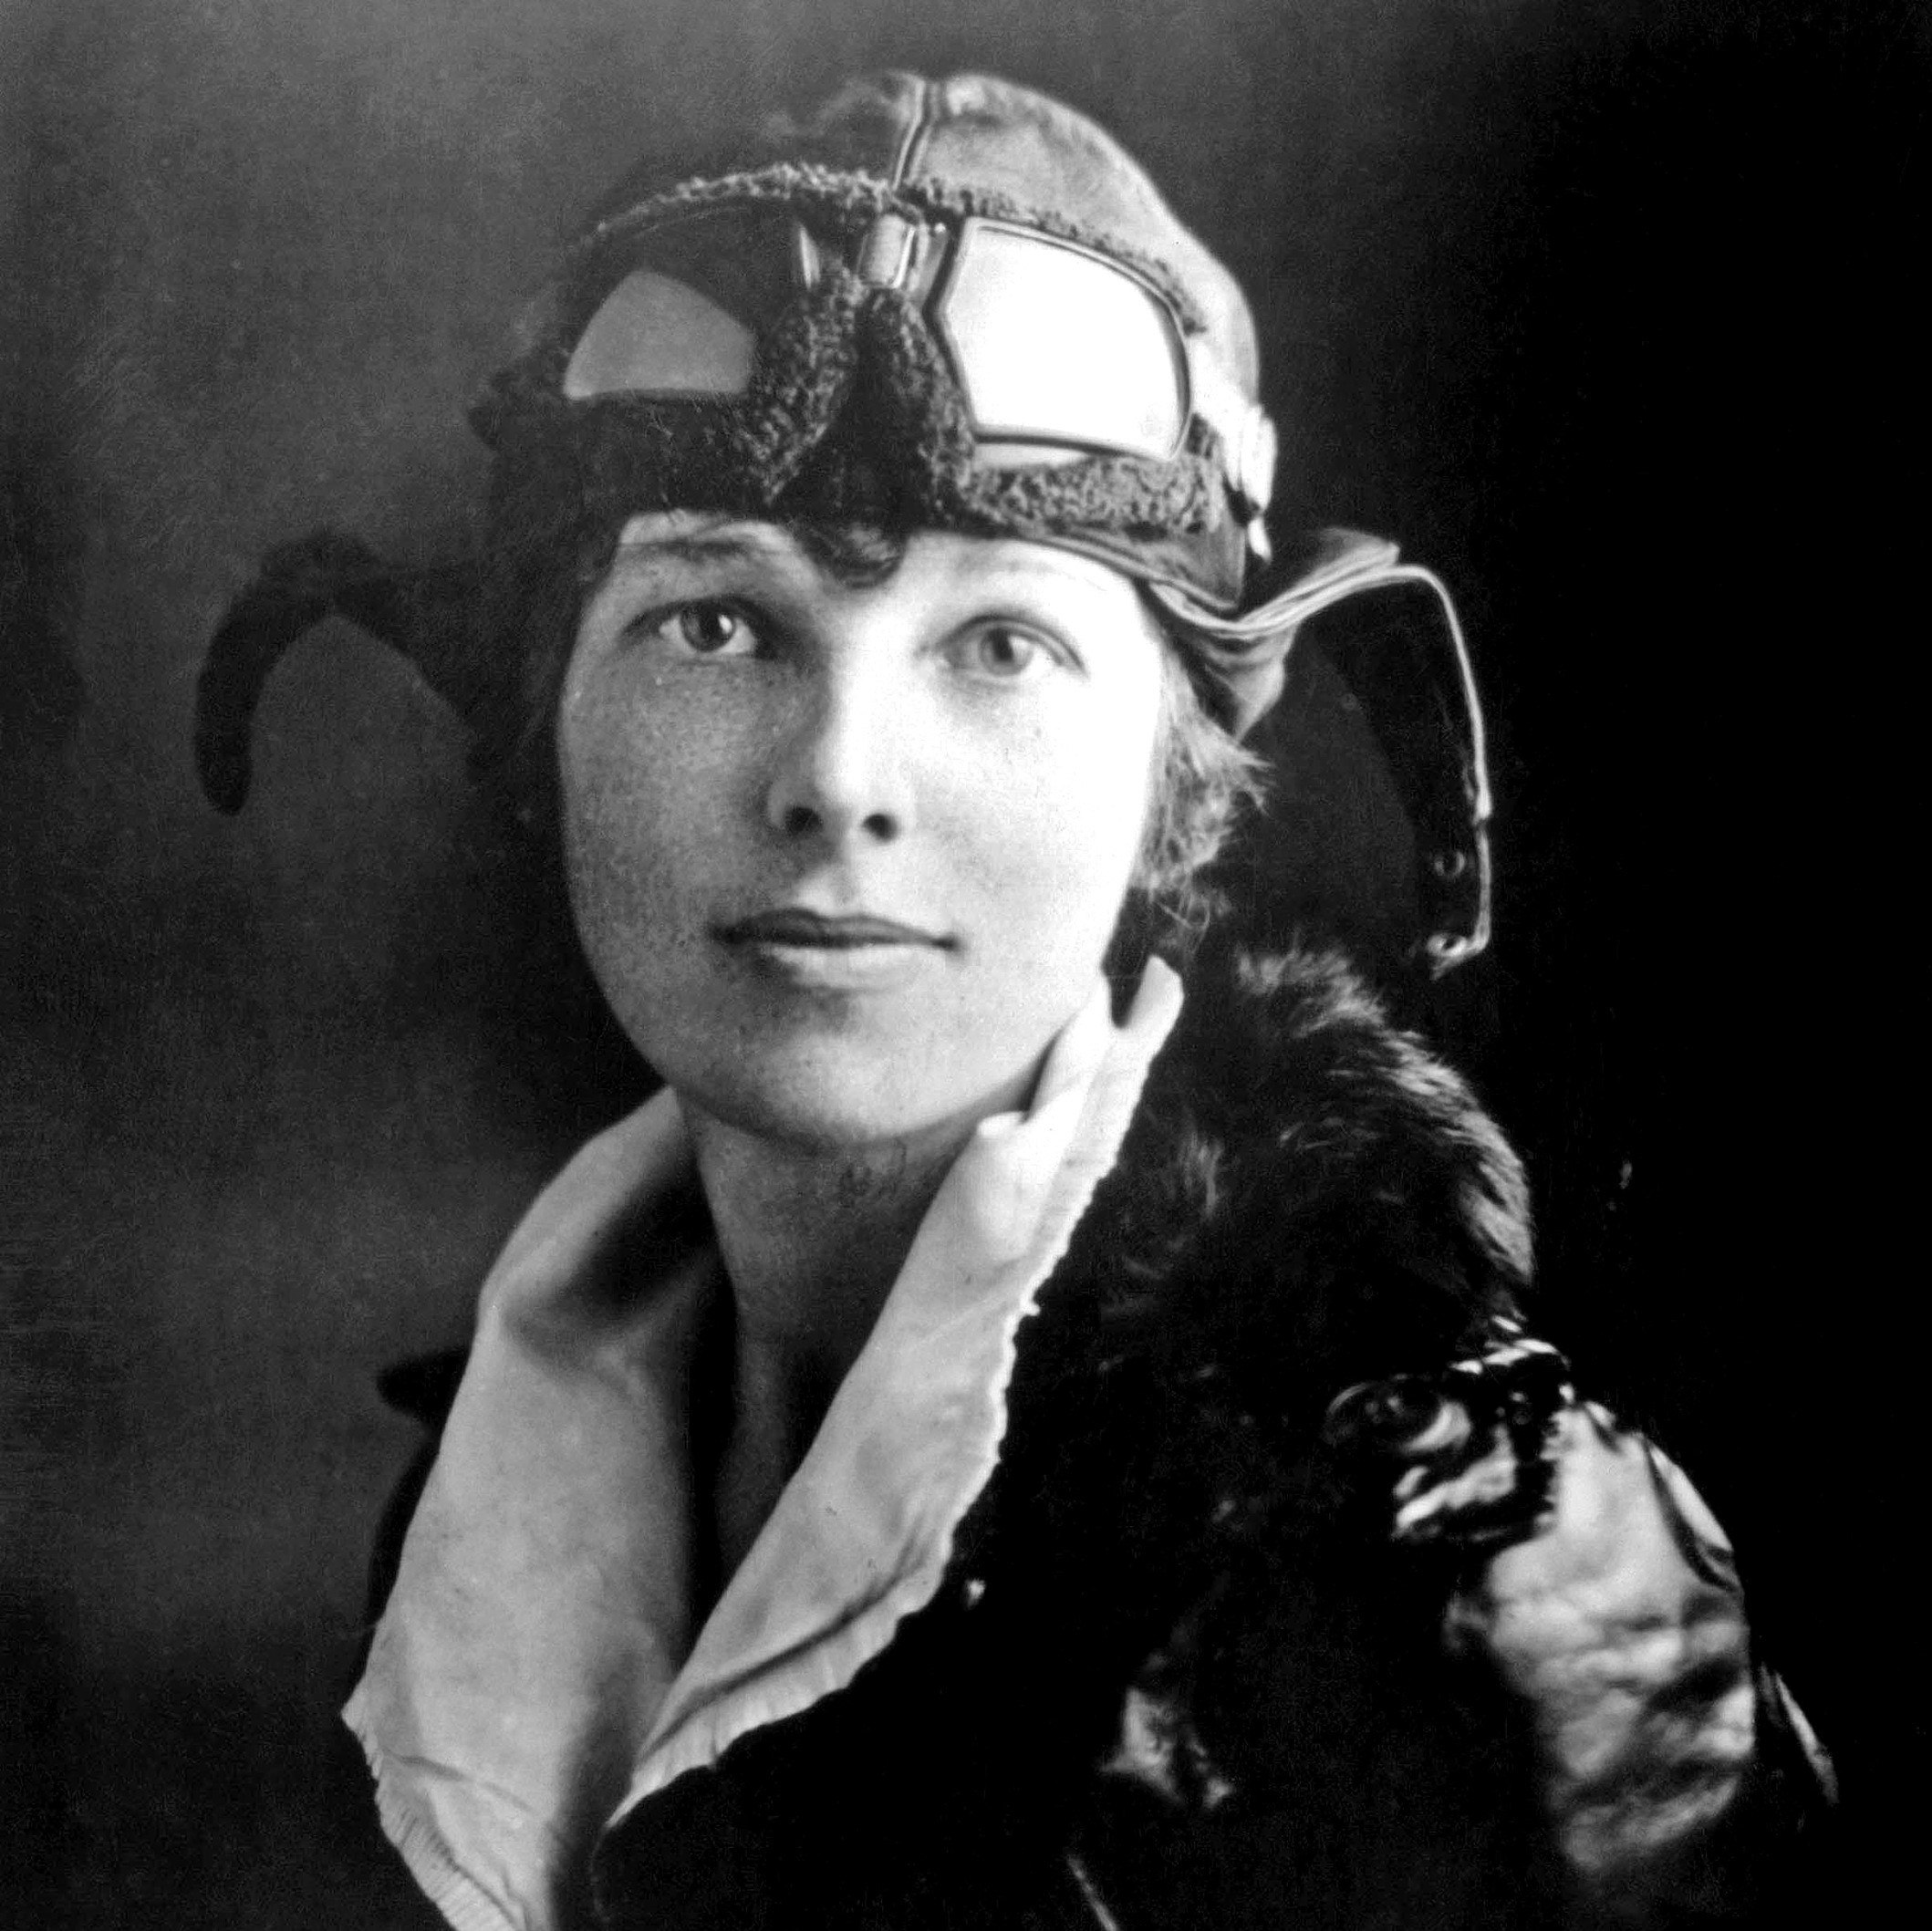 Amelia_Earhart